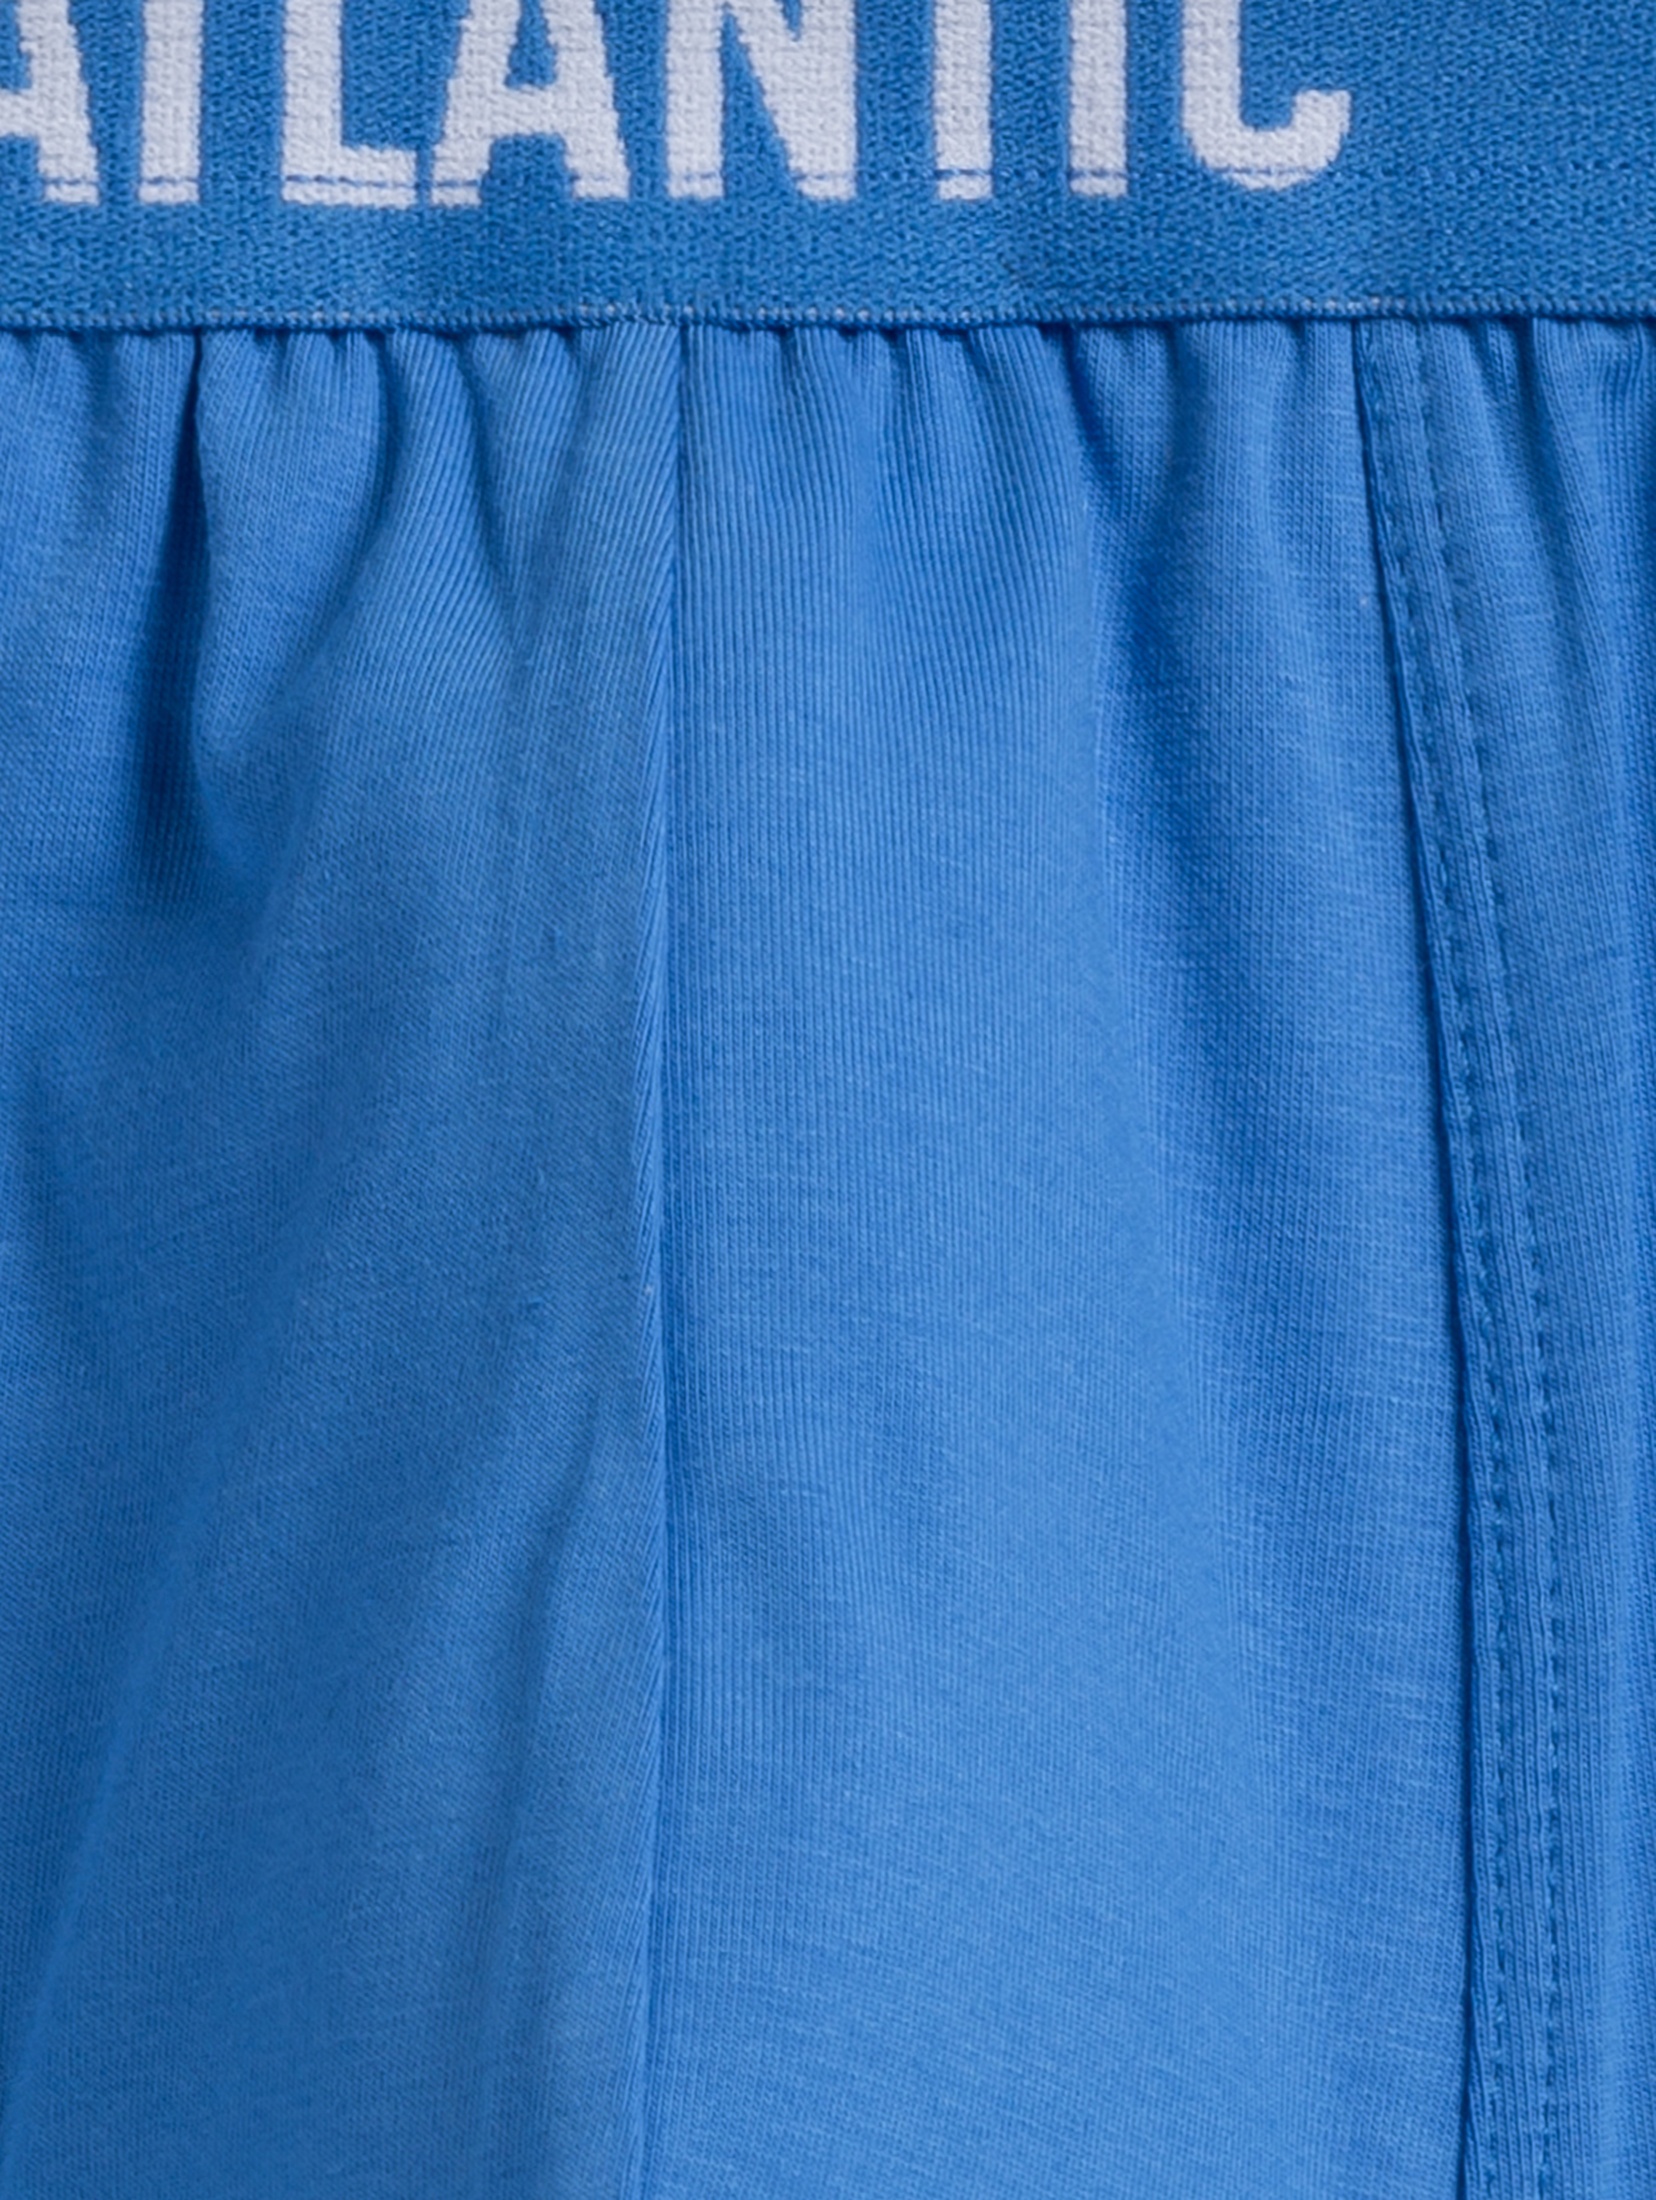 Bokserki męskie obcisłe w odcieniach szaro-niebiesko-granatowych 5pak - Atlantic